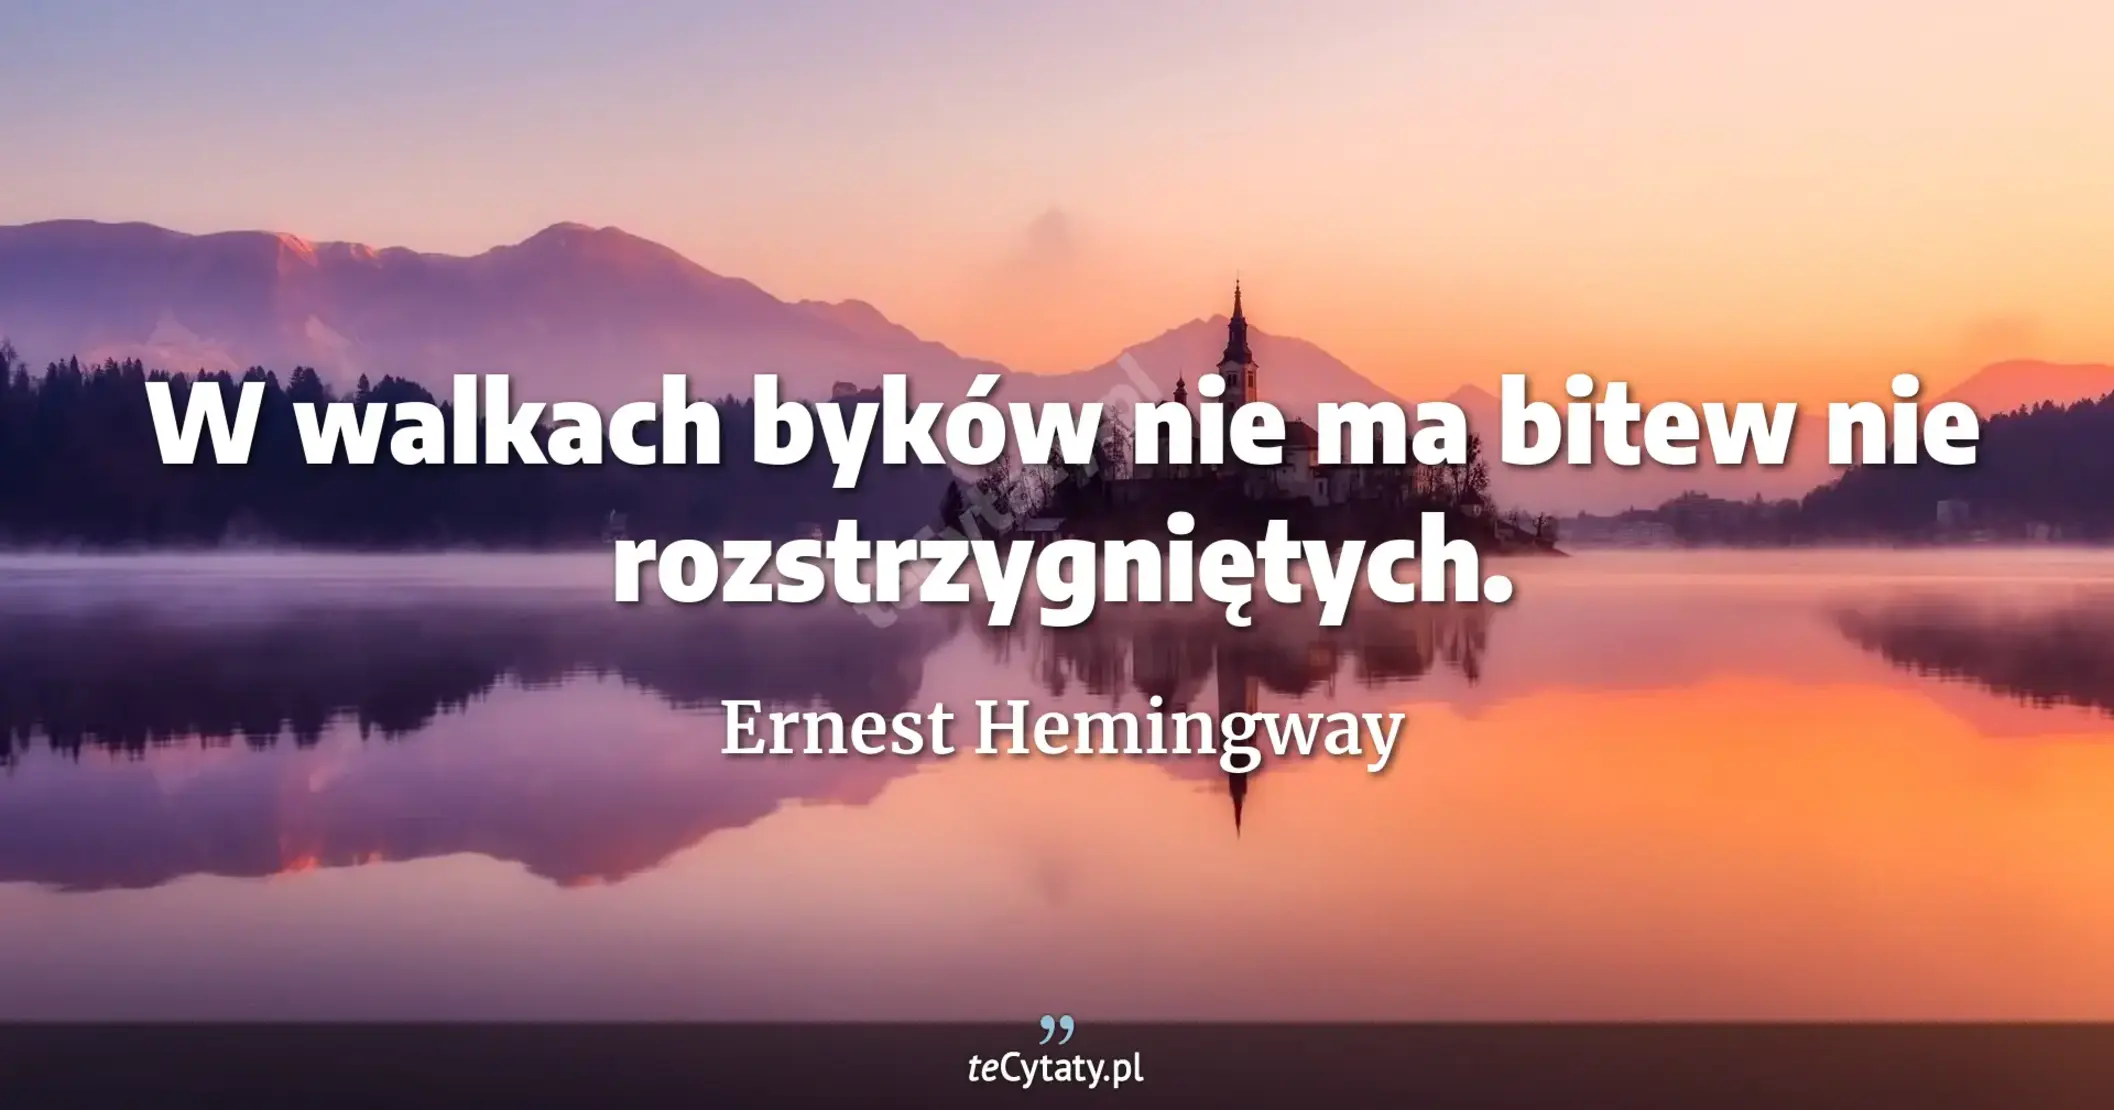 W walkach byków nie ma bitew nie rozstrzygniętych. - Ernest Hemingway